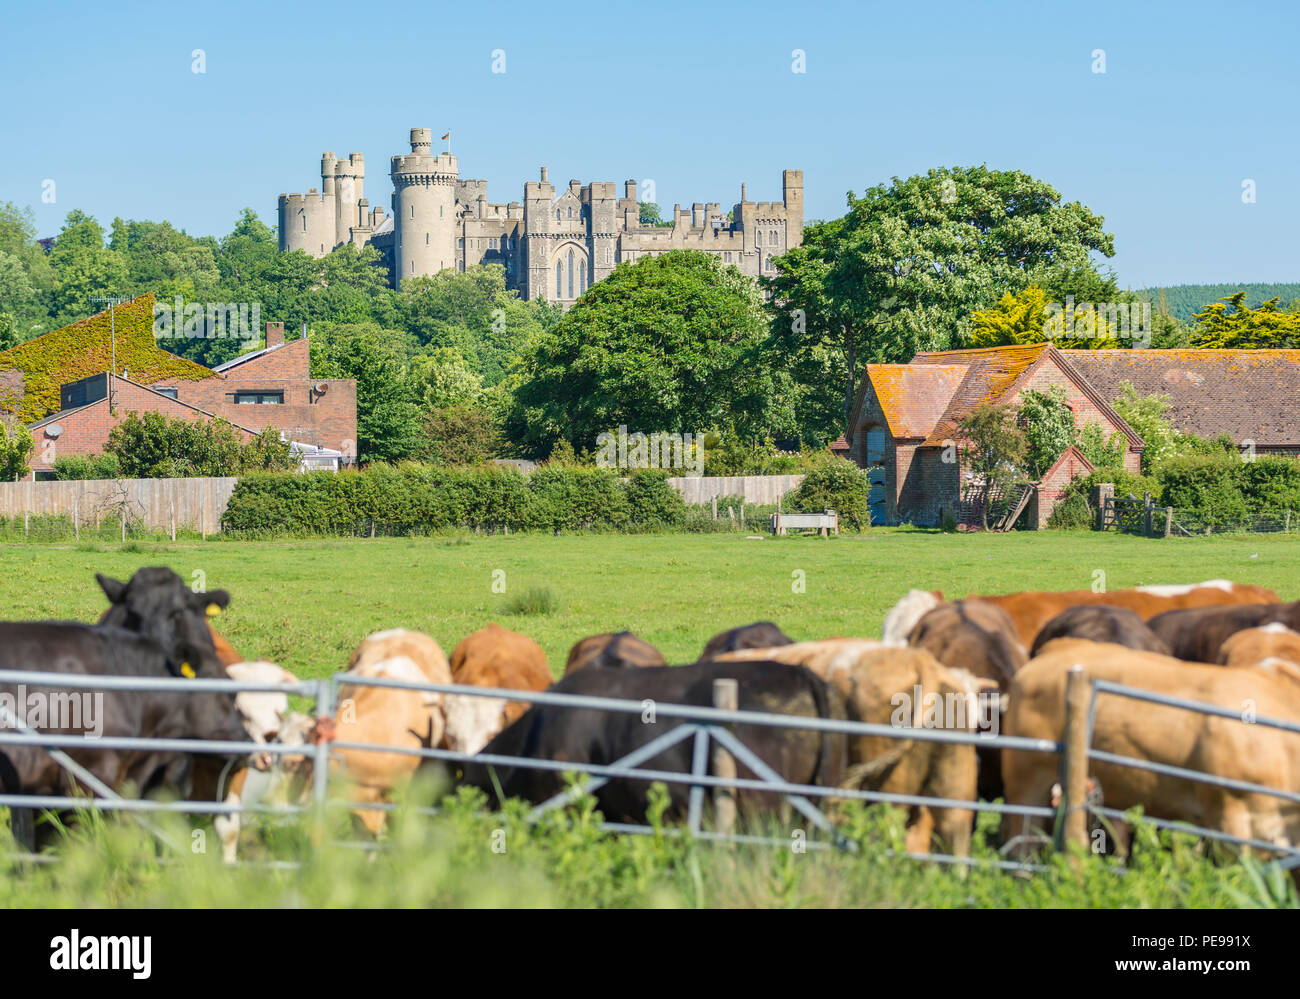 Arundel Castle dans le UK countrside, à partir d'un champ de vaches dans la vallée de l'Arun à Arundel, West Sussex, Angleterre, Royaume-Uni. La château. Château UK. Banque D'Images